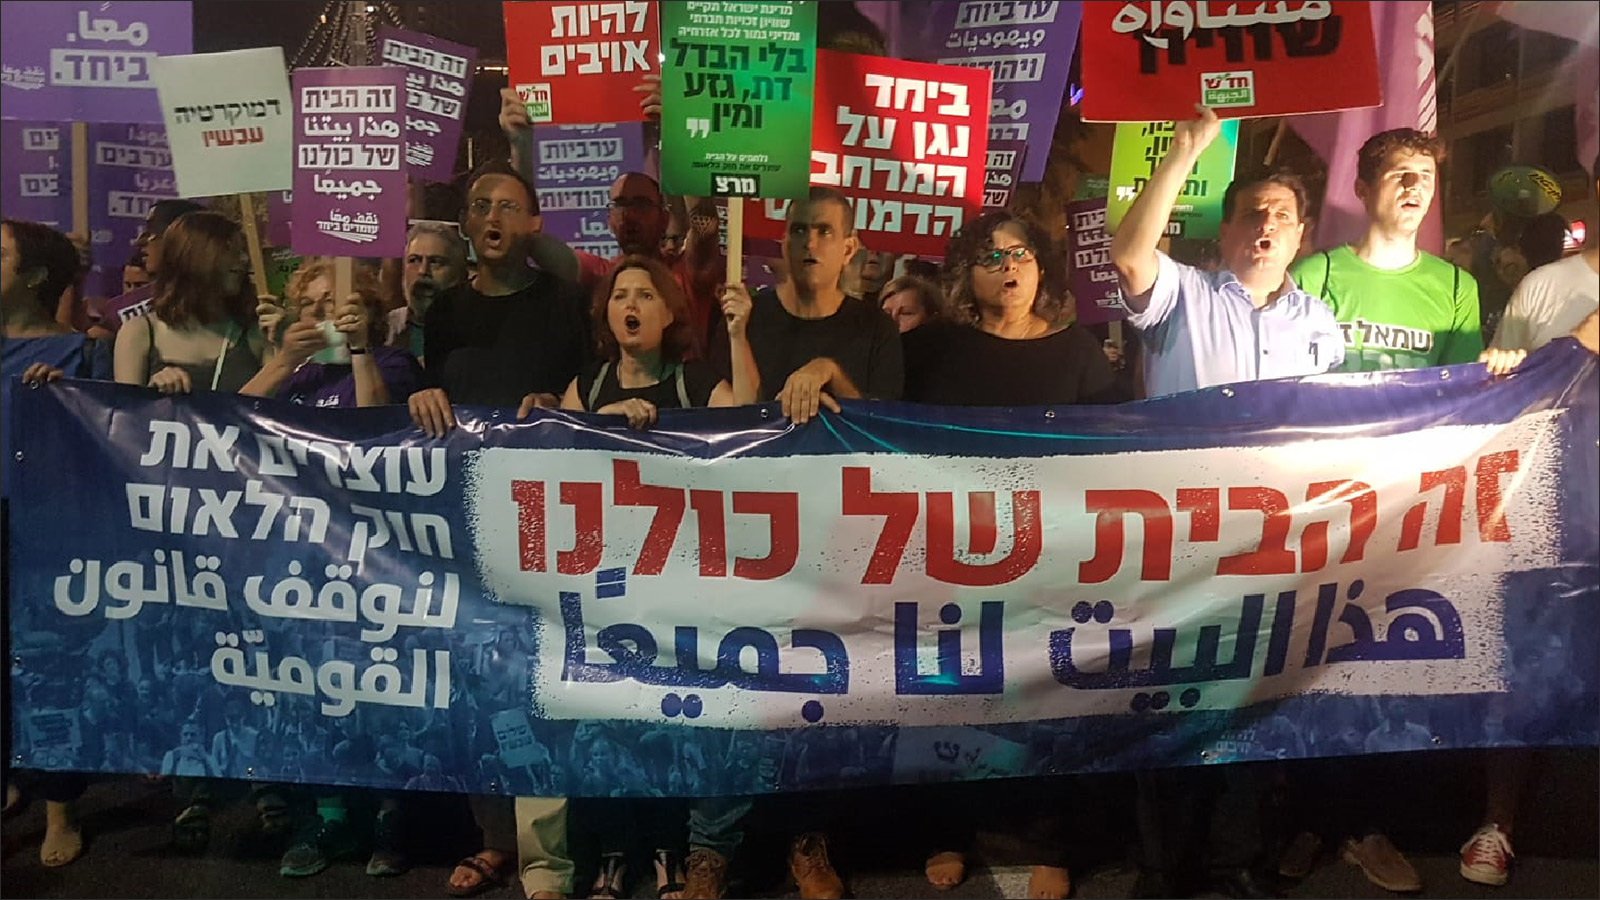 ‪مظاهرة مشتركة للعرب واليهود أقيمت في تل أبيب رفضا لـ